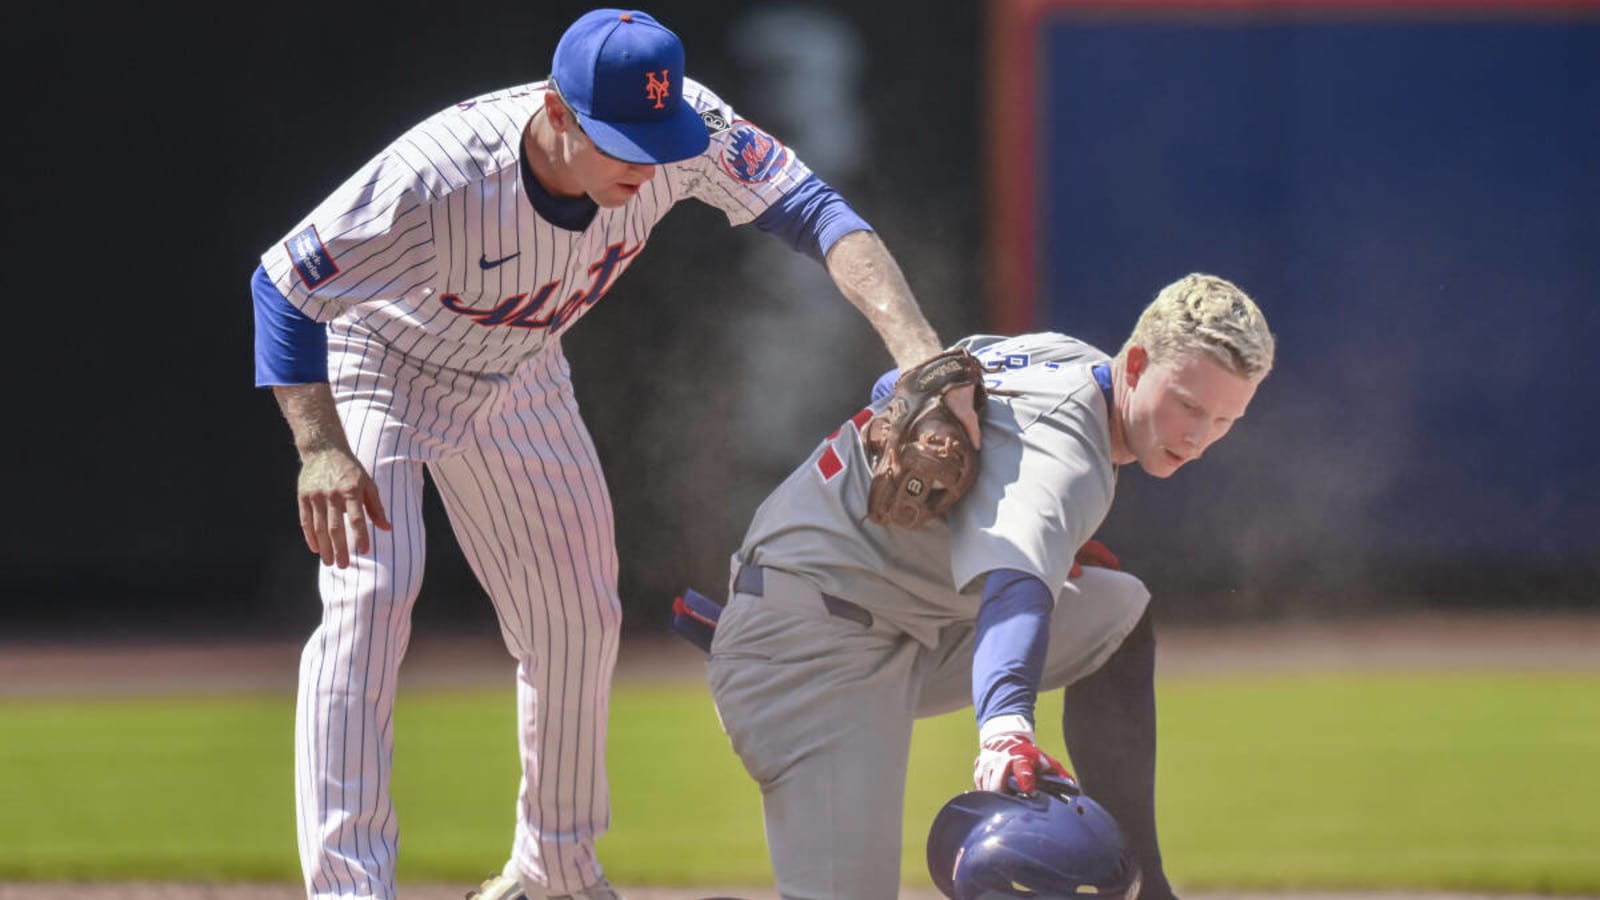 Cubs Bullpen Blows Early Lead, Mets Walk It Off in Extras